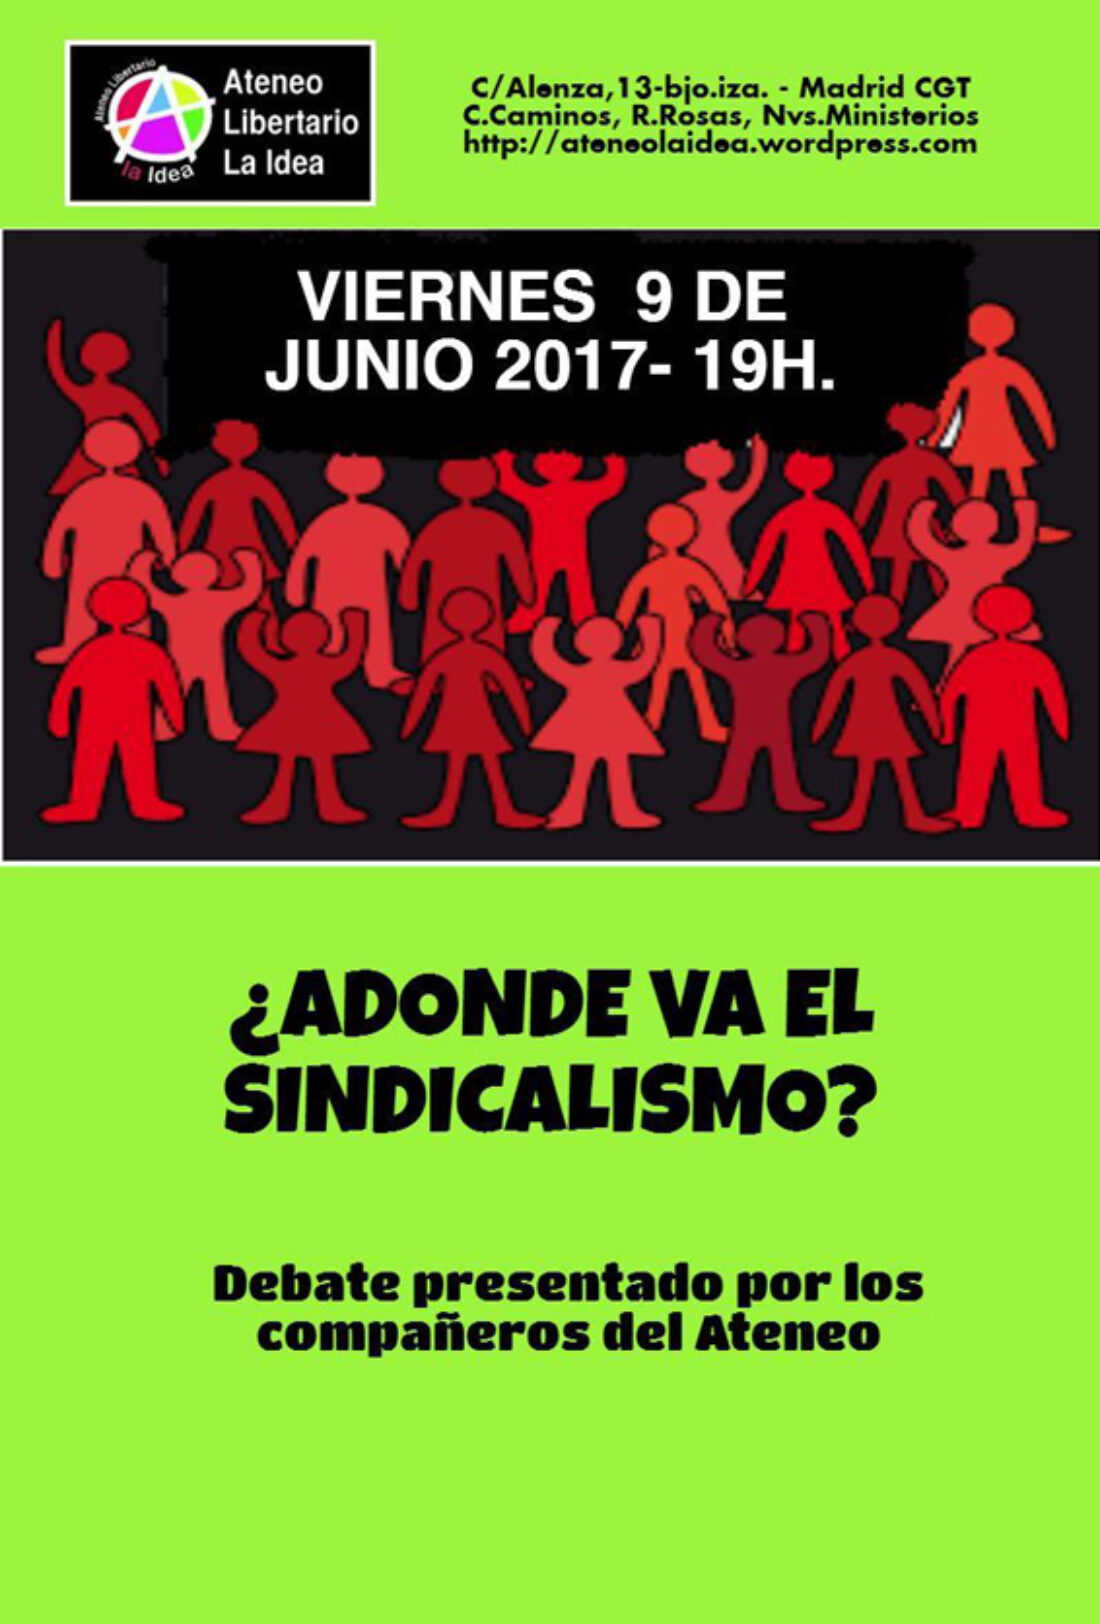 Charla-Debate «Adónde va el sindicalismo? en el Ateneo Libertario La Idea